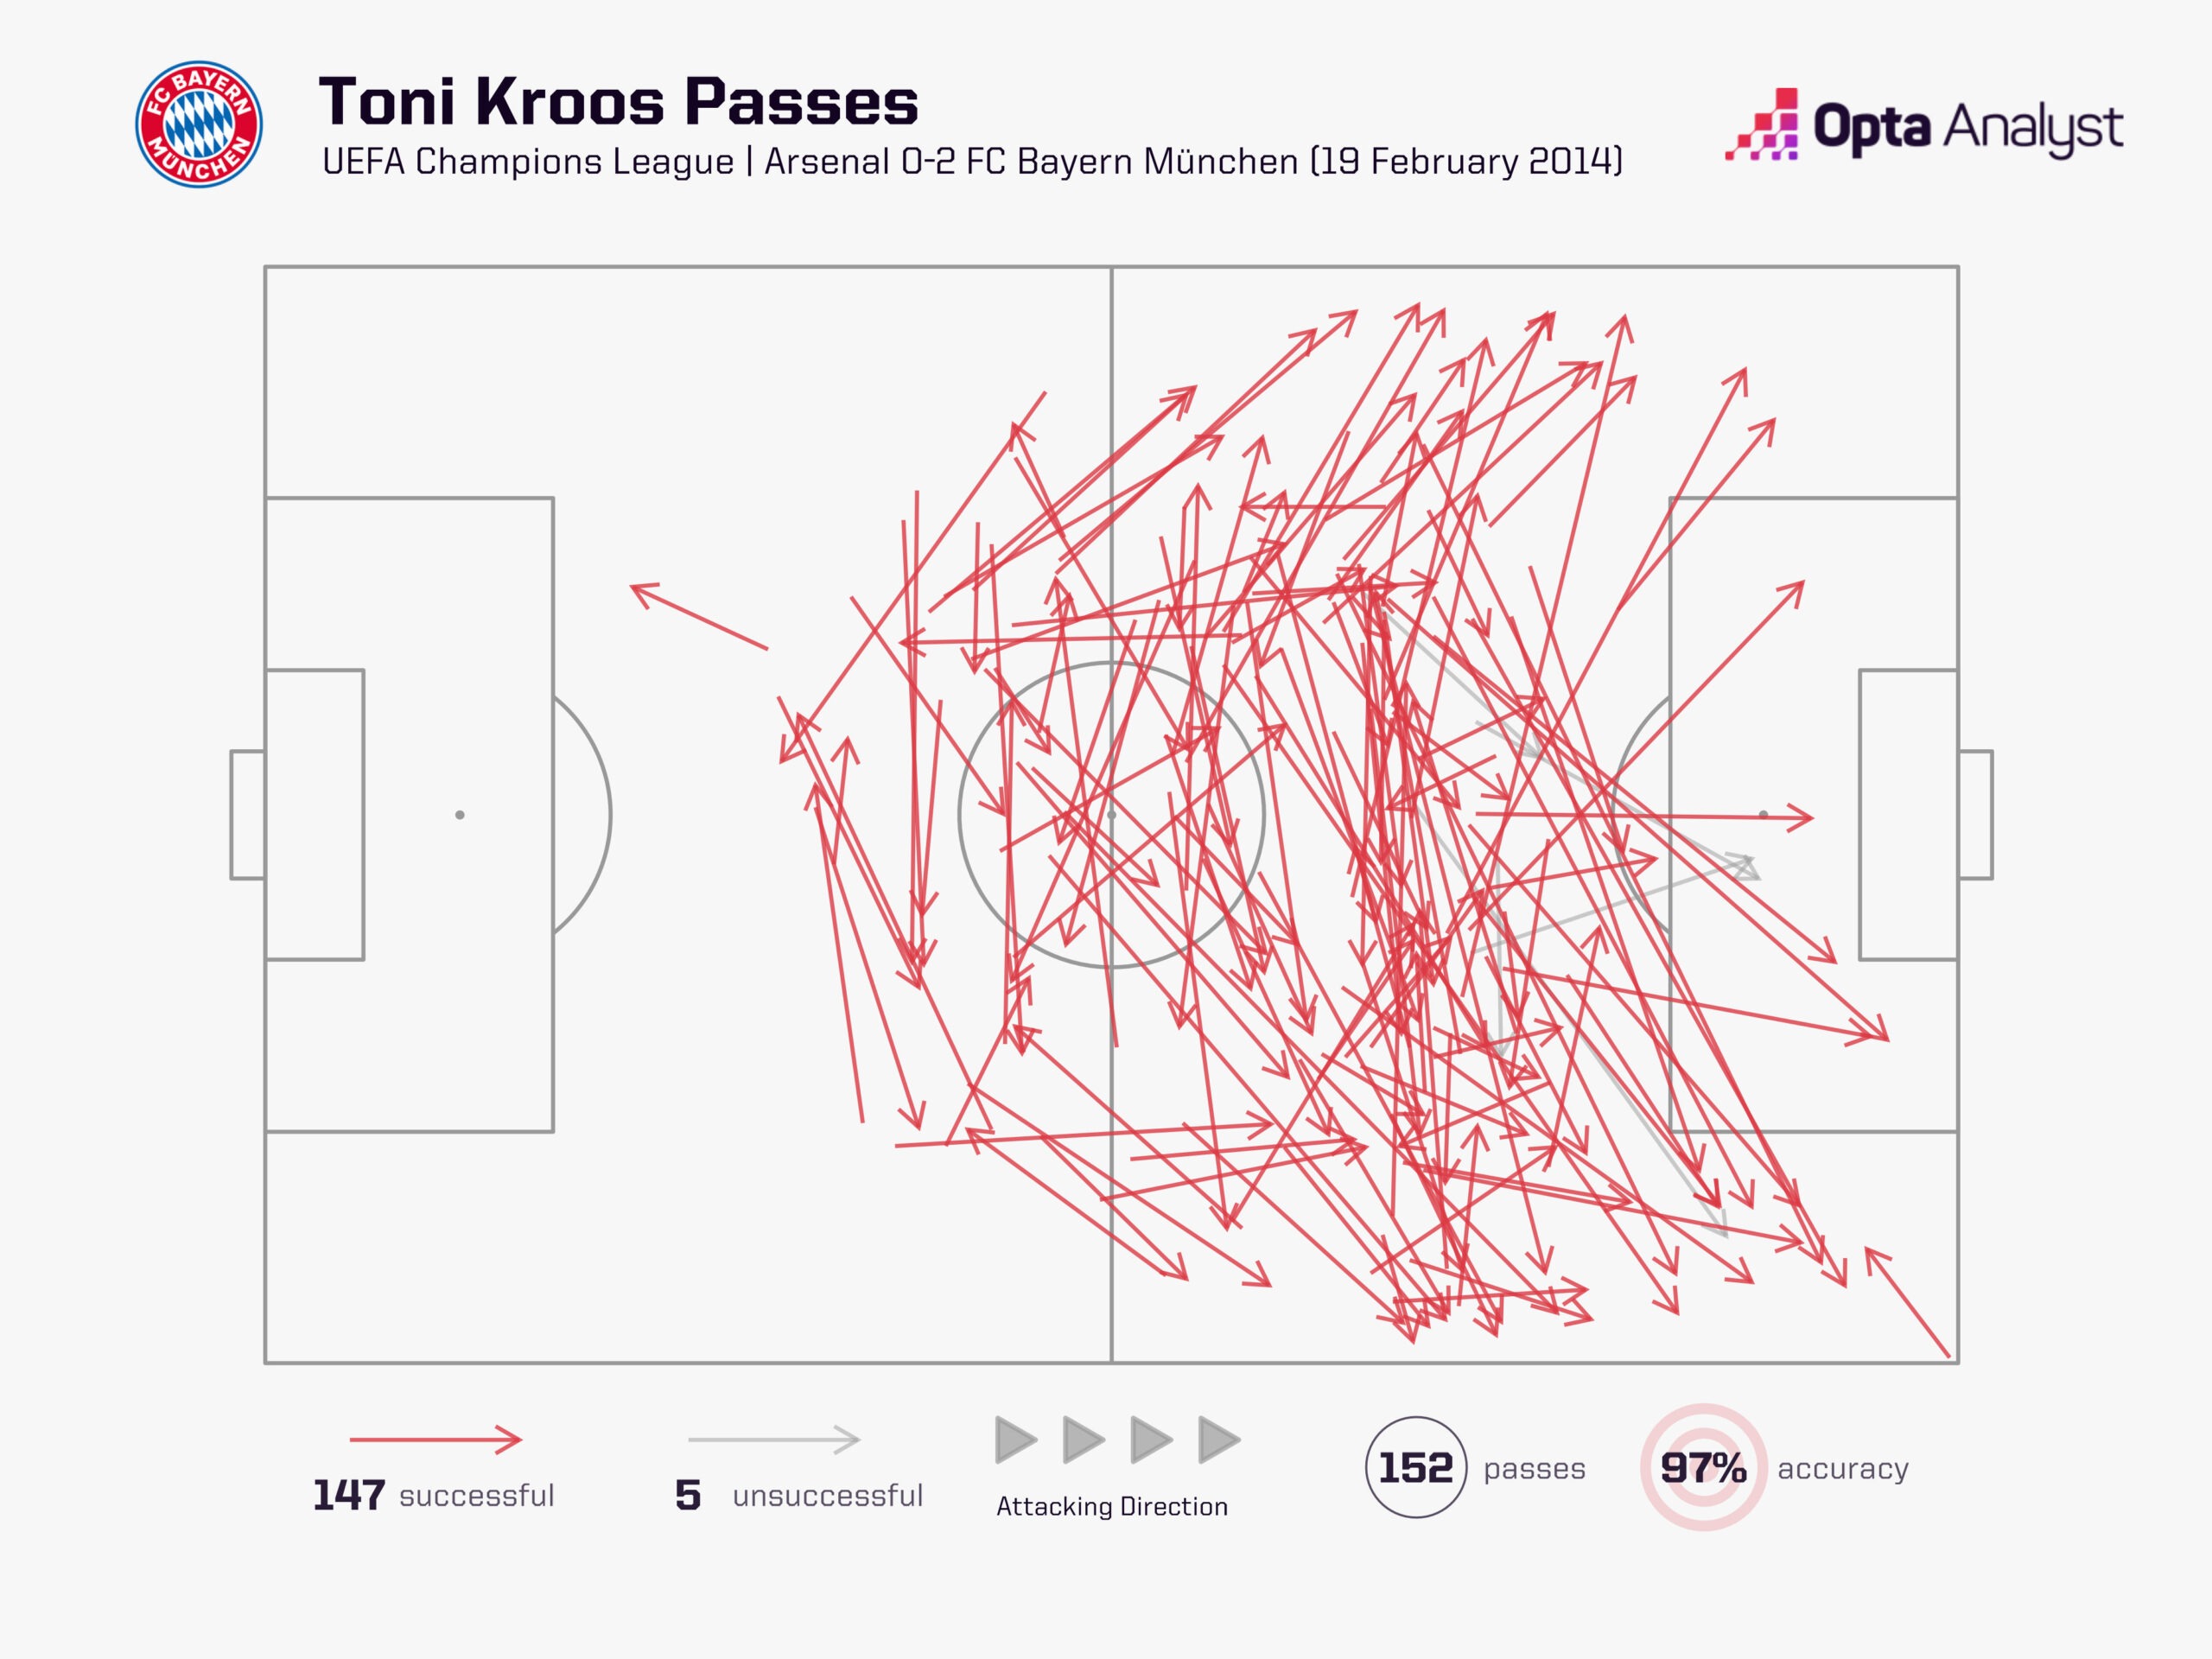 Toni Kroos passes vs Arsenal 2014